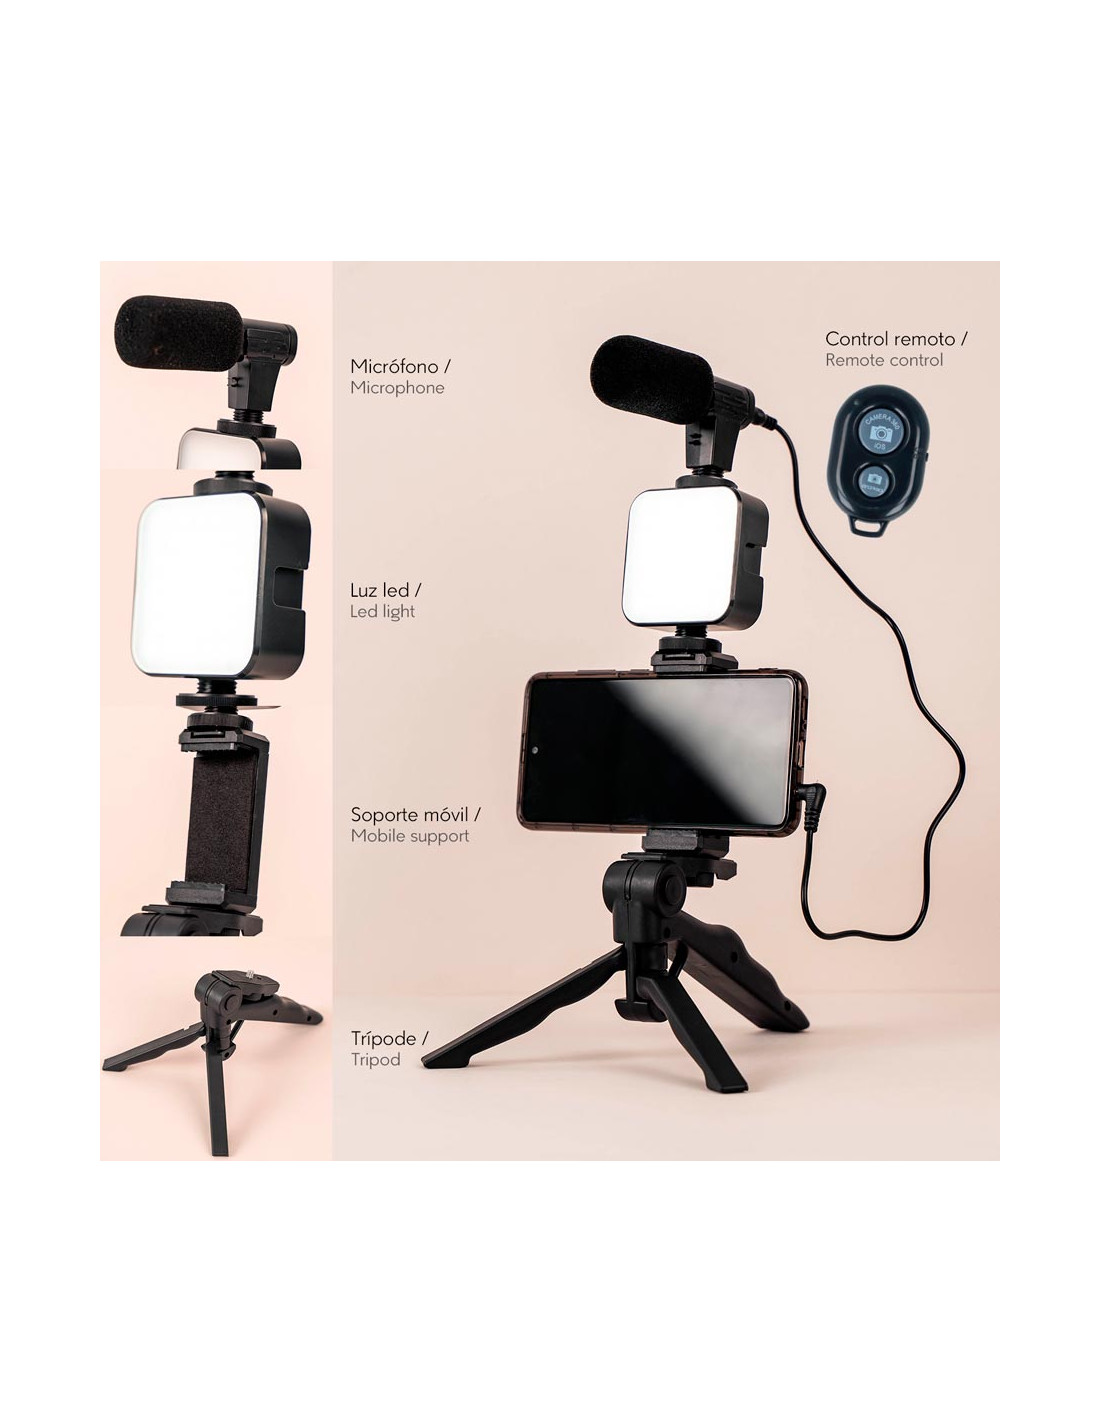 Trípode para Móvil - Smartphone Video Kit